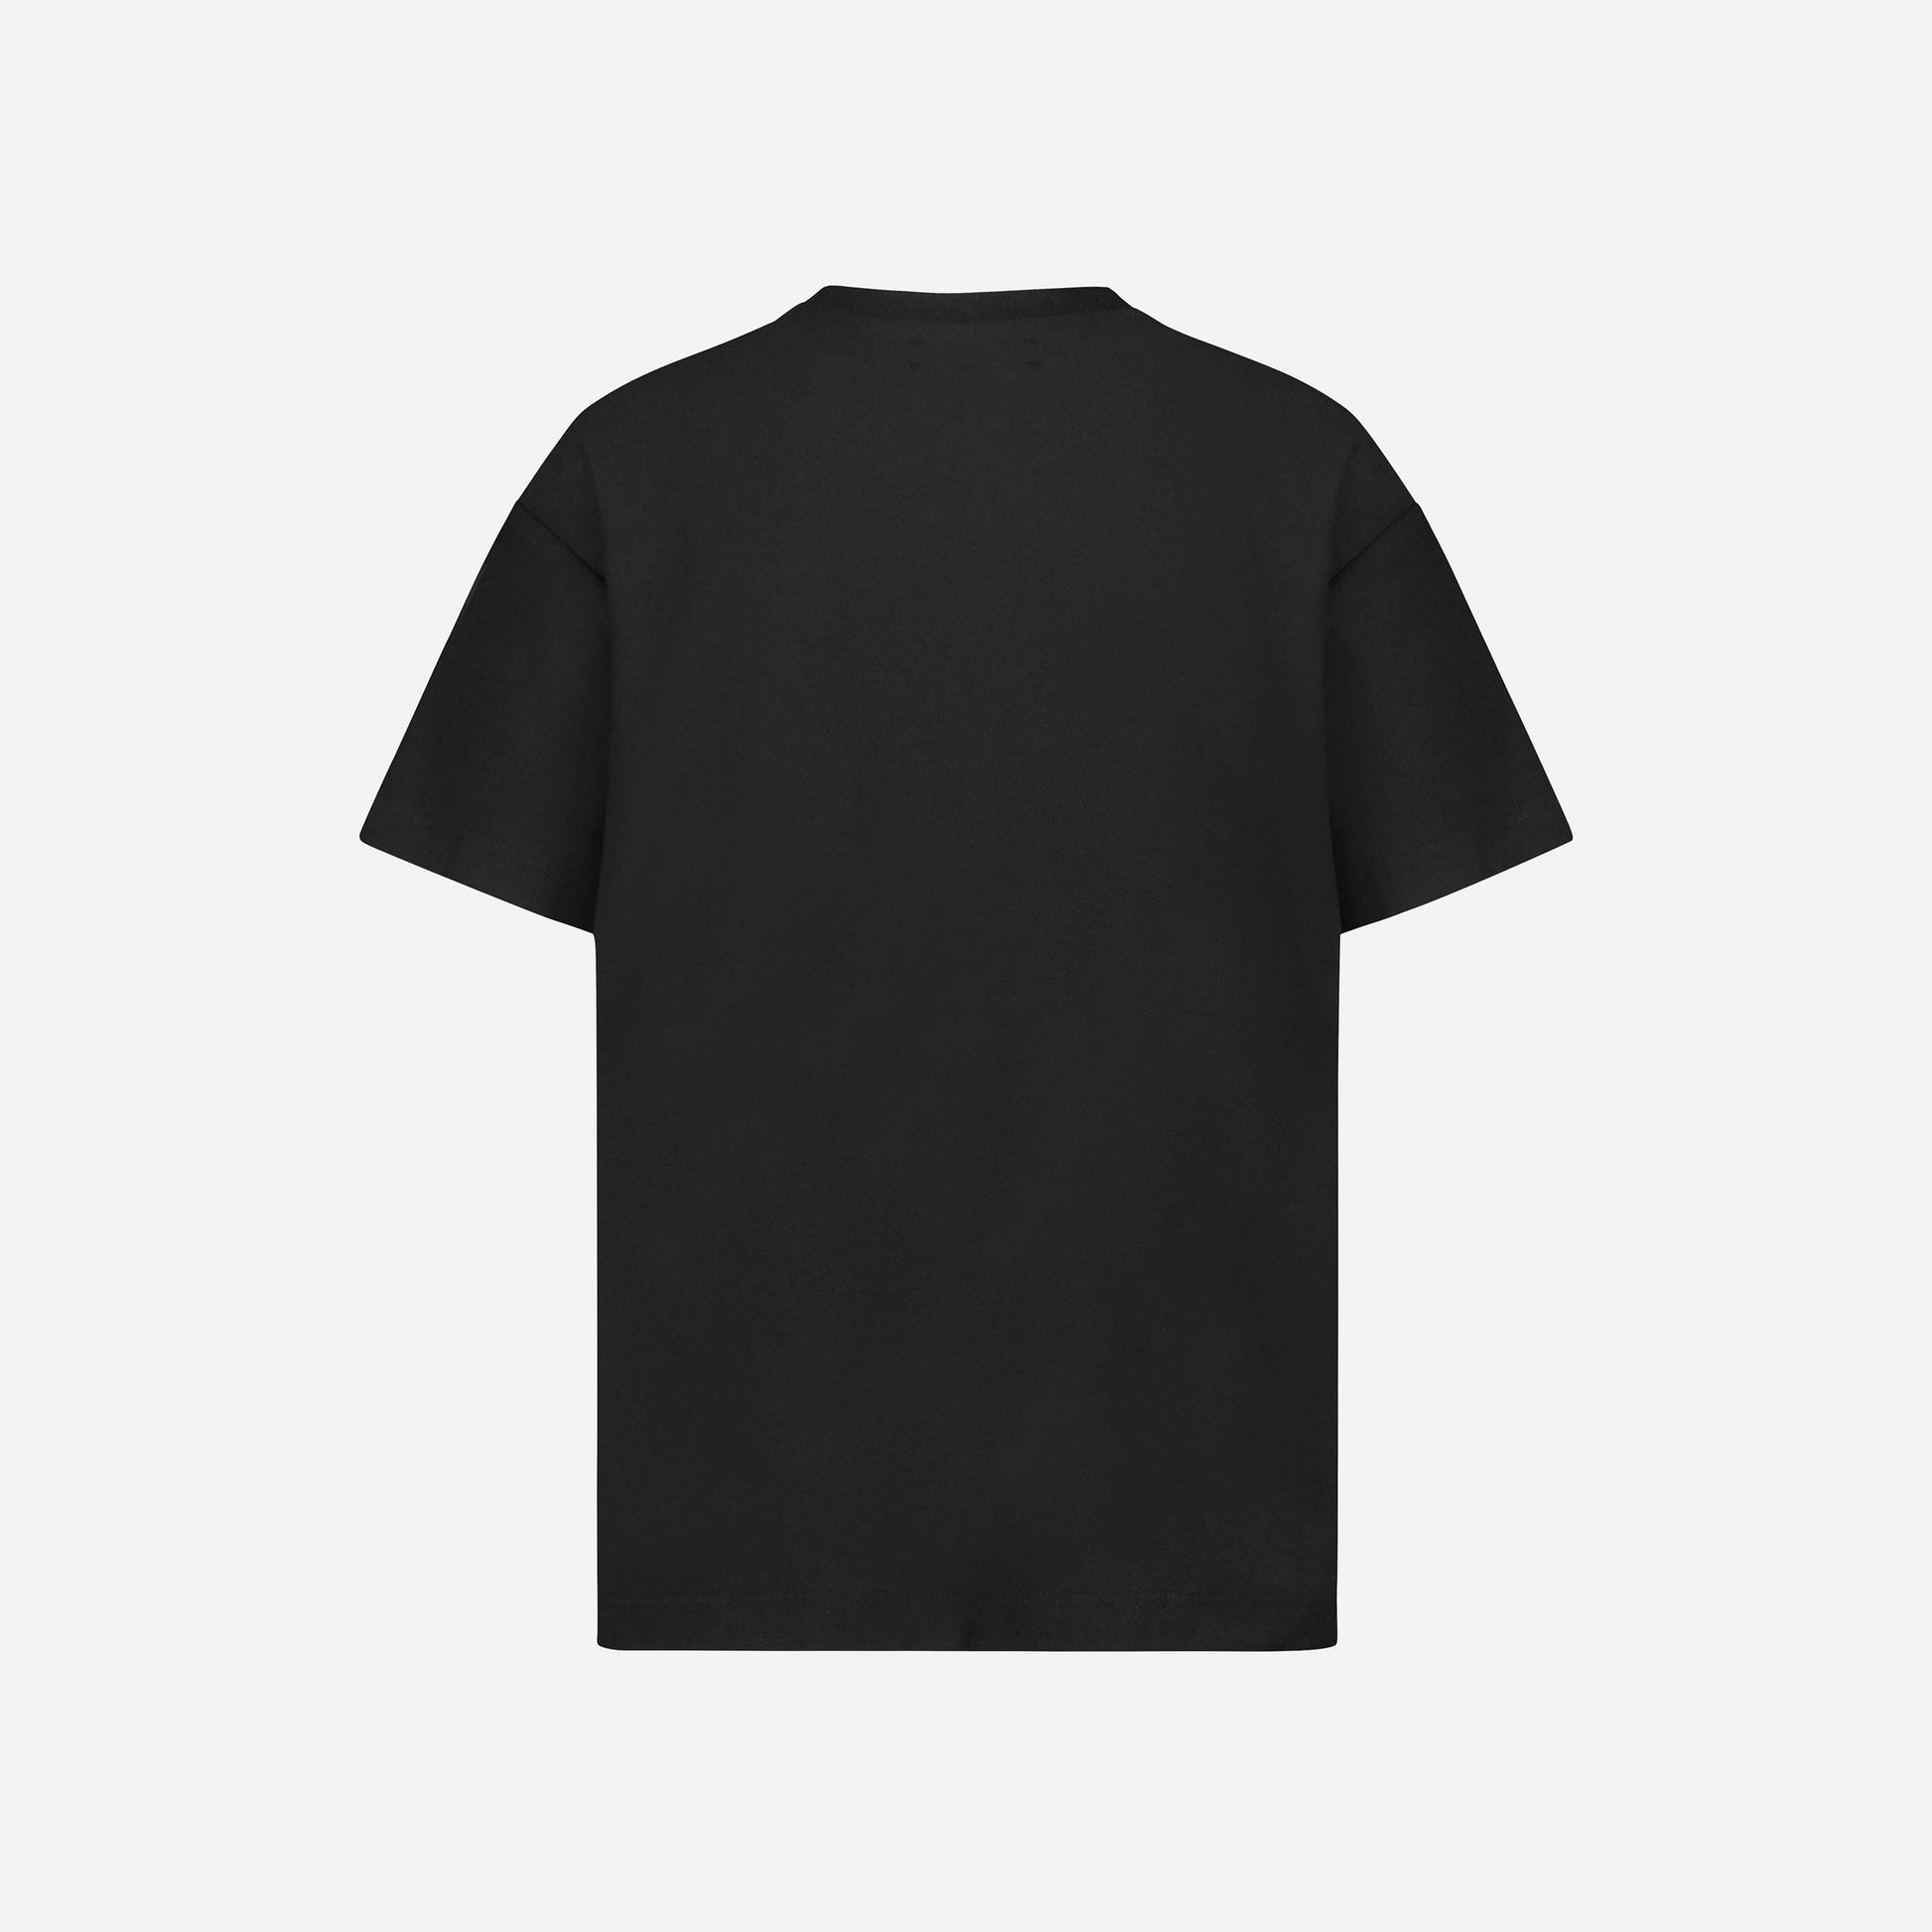 Distorted Printemps-Été T-Shirt in Black